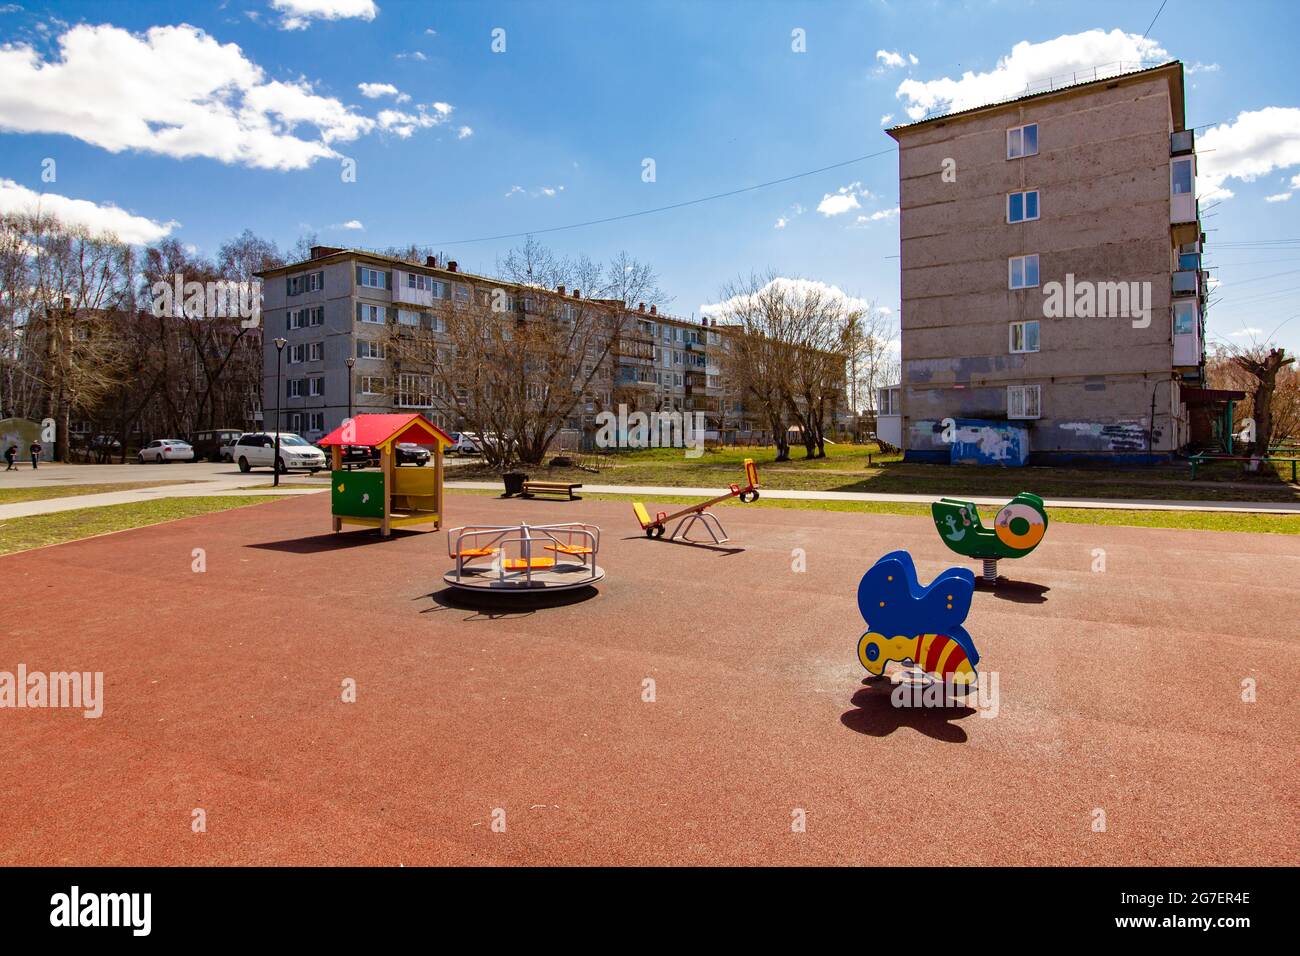 Nuovo parco giochi nella parte vecchia della città. Miglioramento delle infrastrutture delle zone residenziali della città. Foto Stock